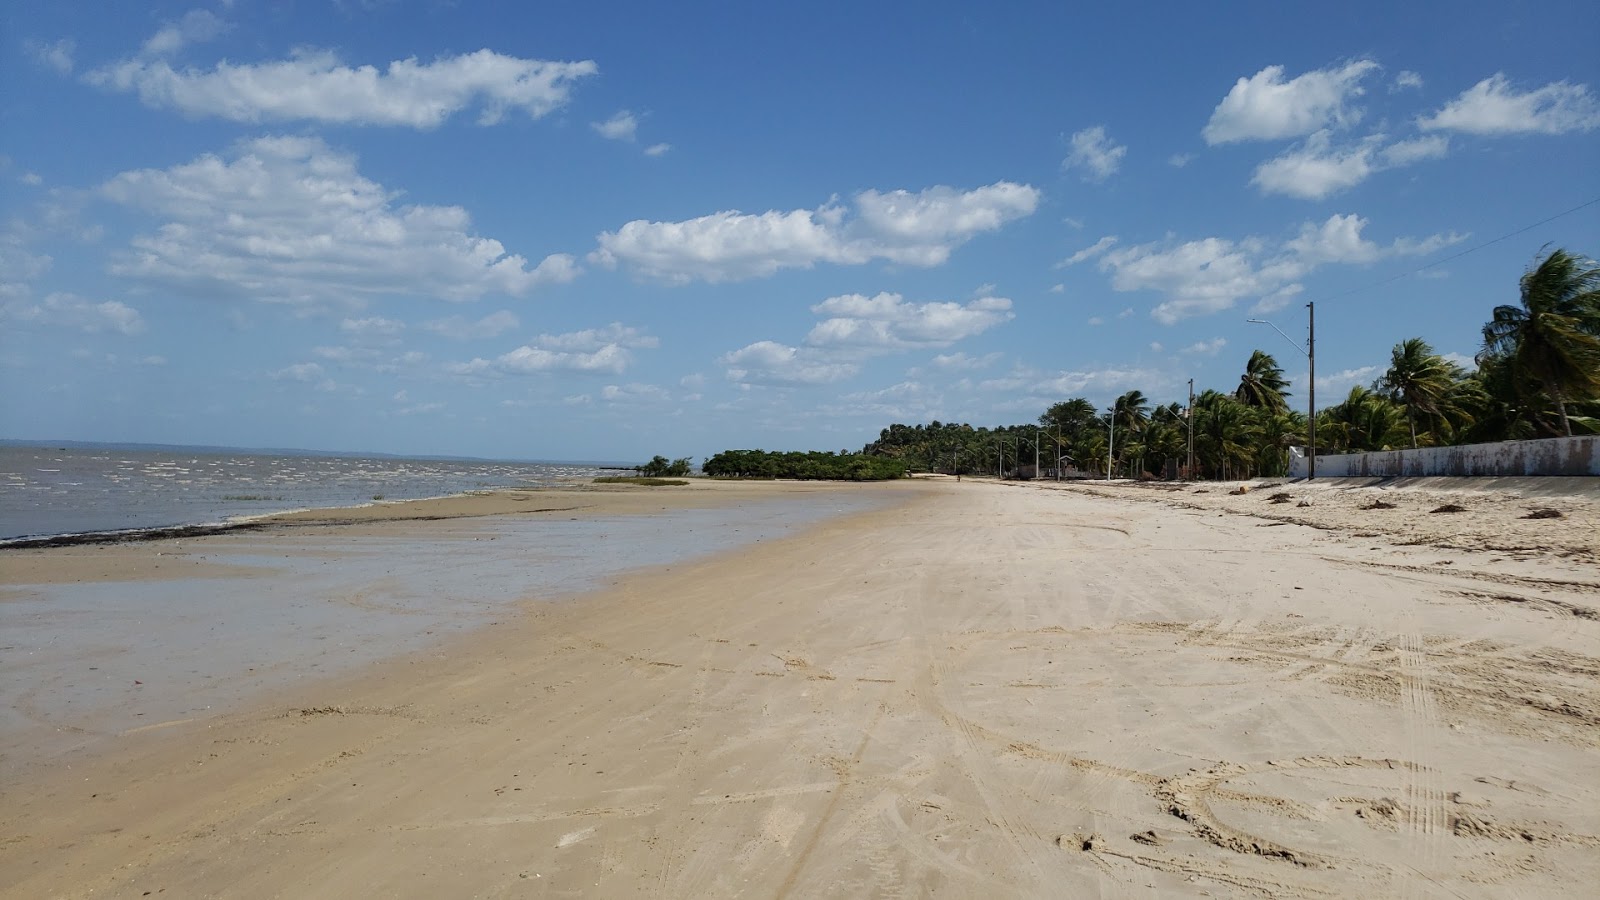 Zdjęcie Praia de Boa Viagem z powierzchnią jasny piasek